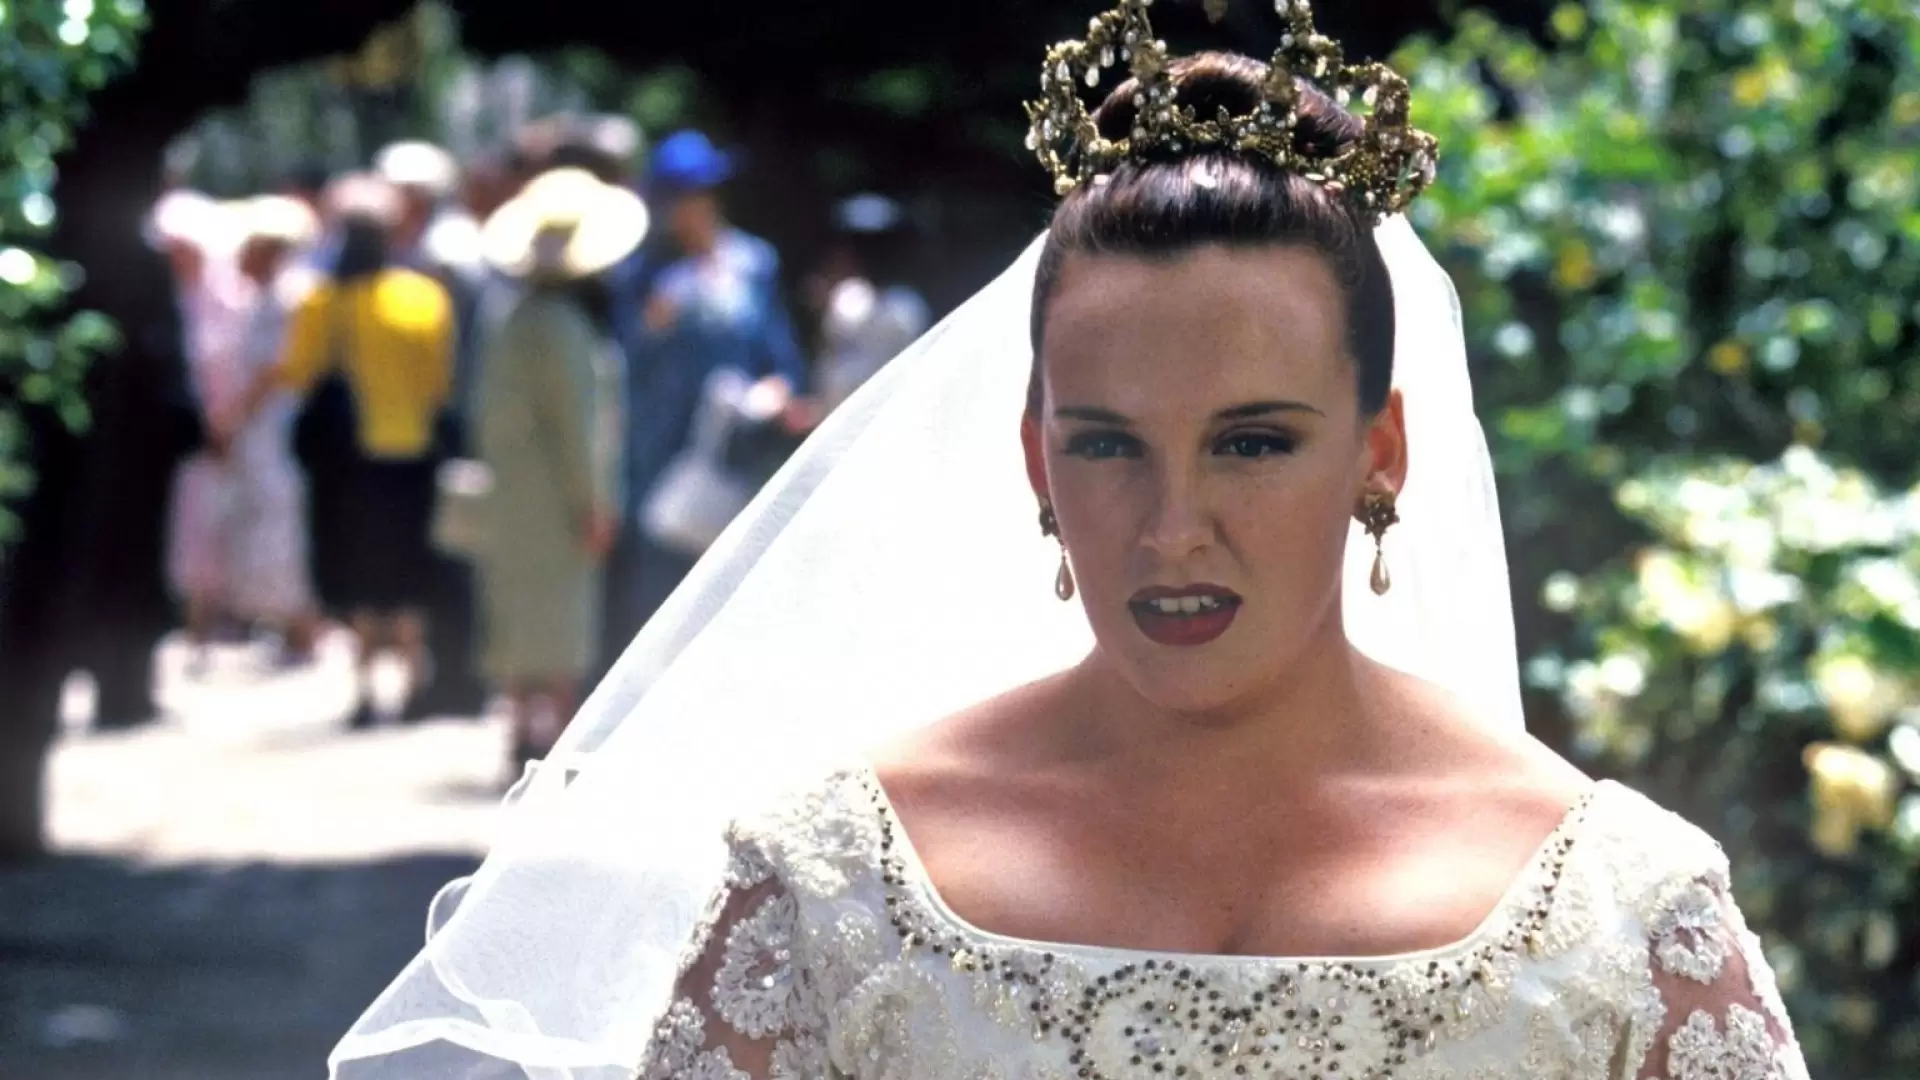 دانلود فیلم Muriel’s Wedding 1994